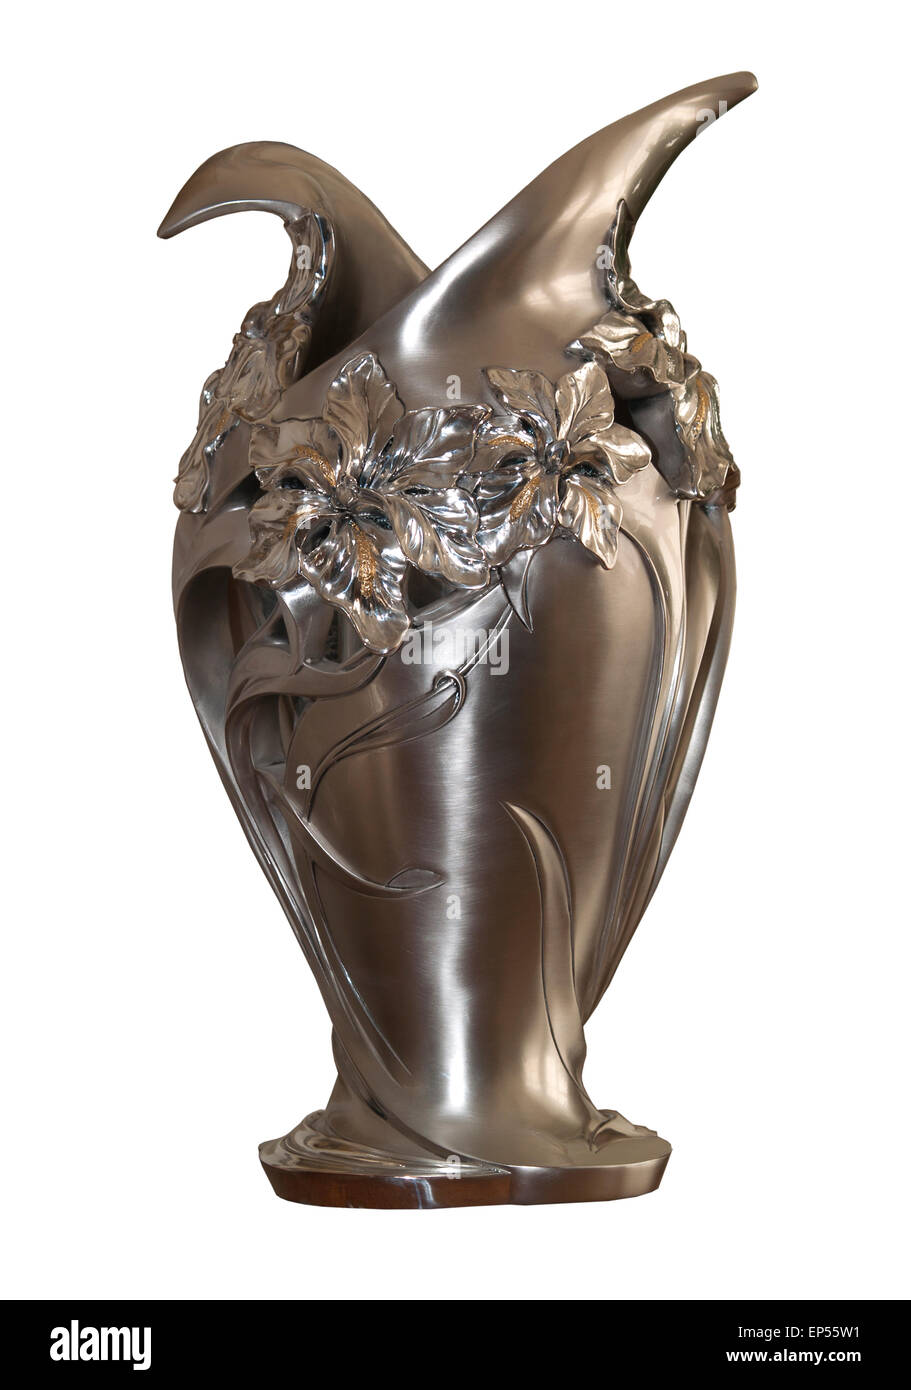 Dekorative Vase aus Metall im Jugendstil style.the Hintergrund ist weiß. Stockfoto